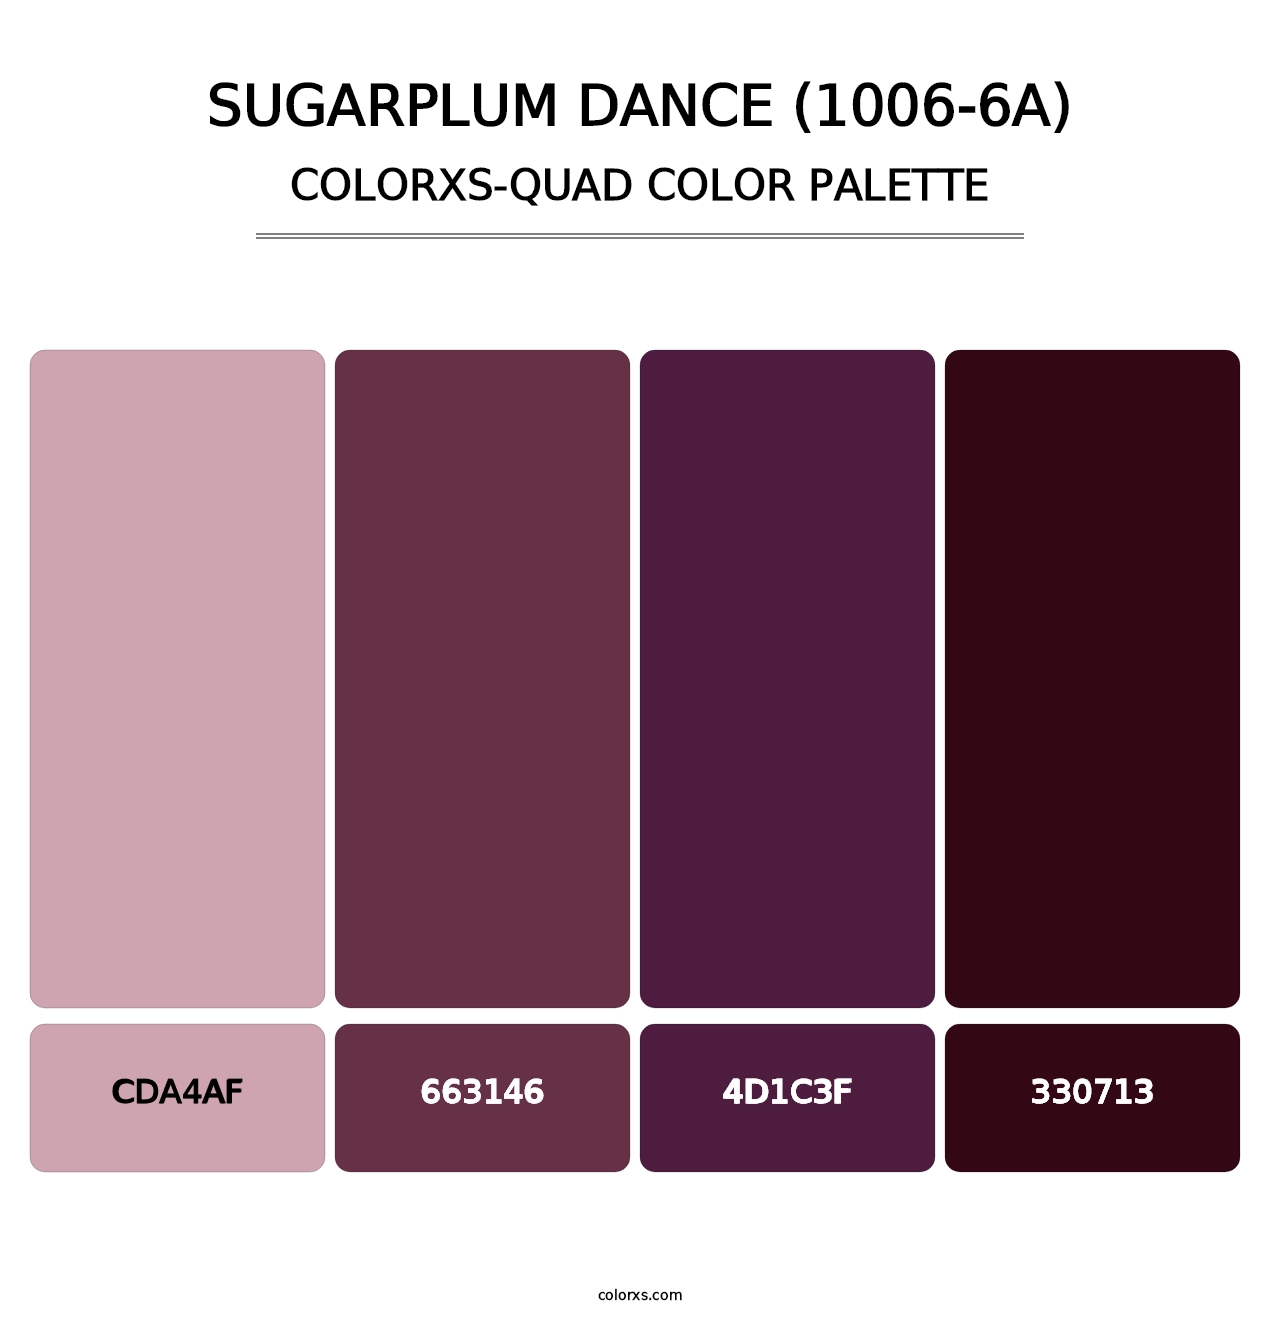 Sugarplum Dance (1006-6A) - Colorxs Quad Palette